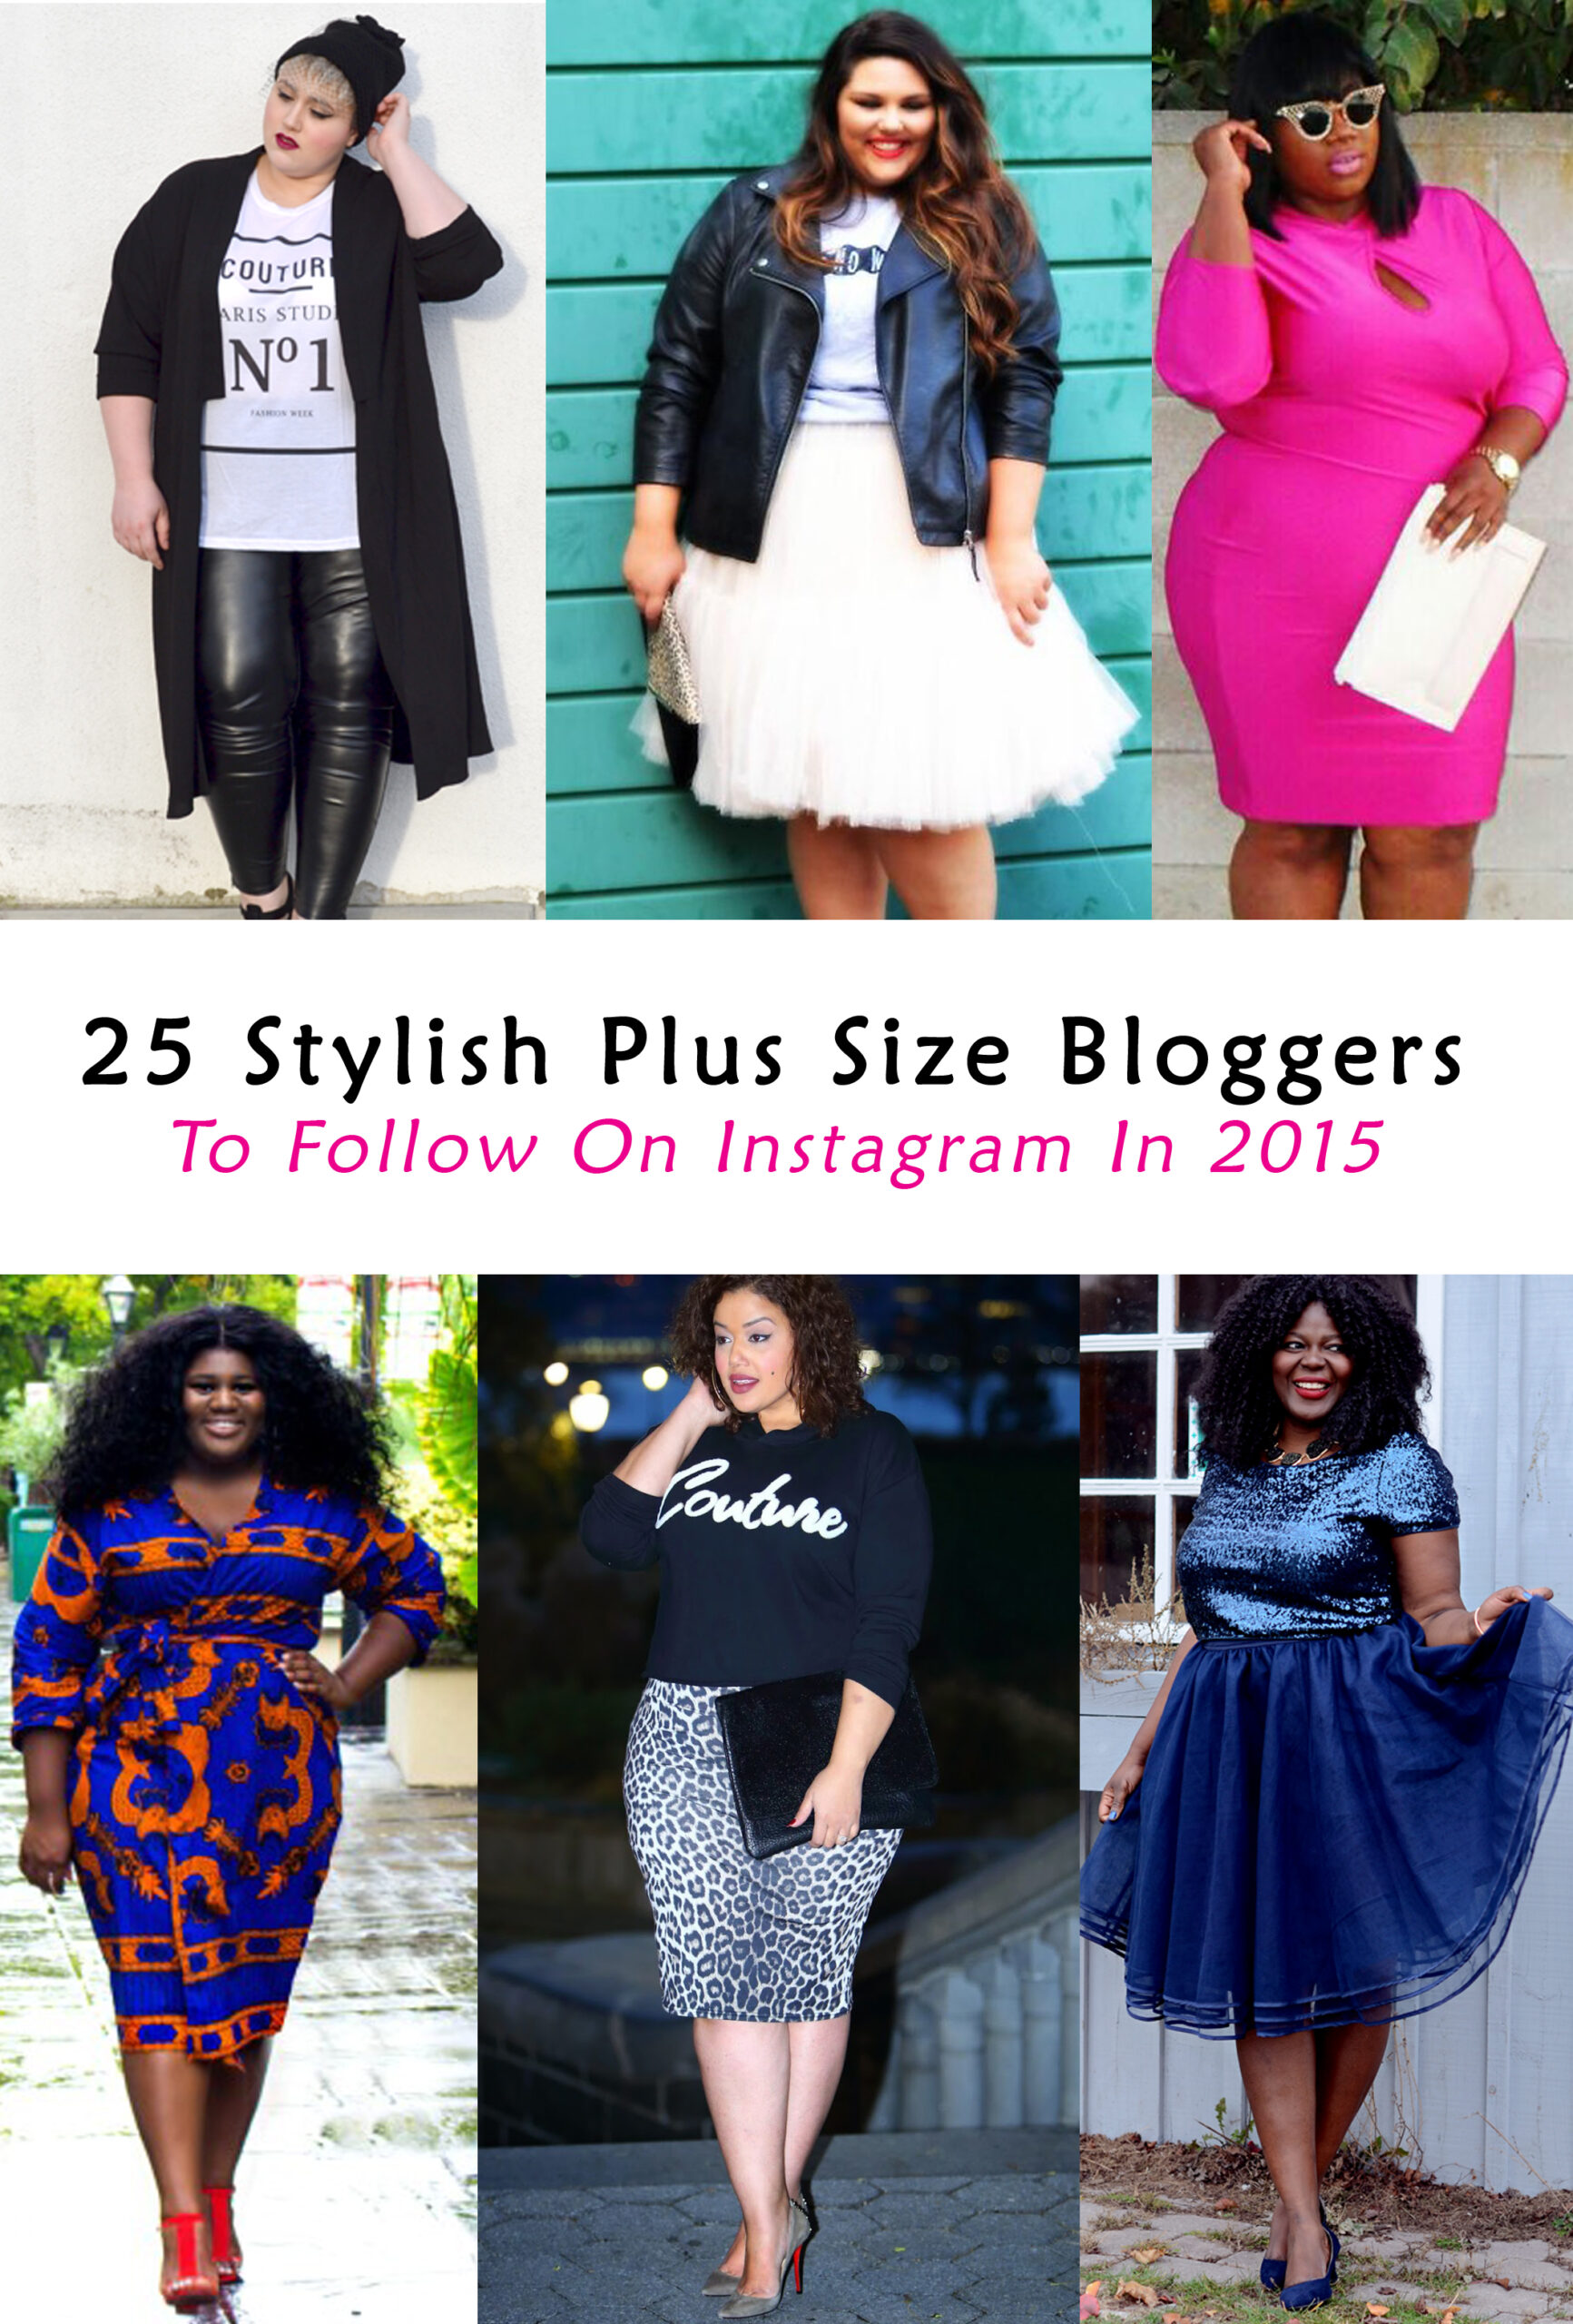 Stylish Plus Size Fashion Showcase on Instagram